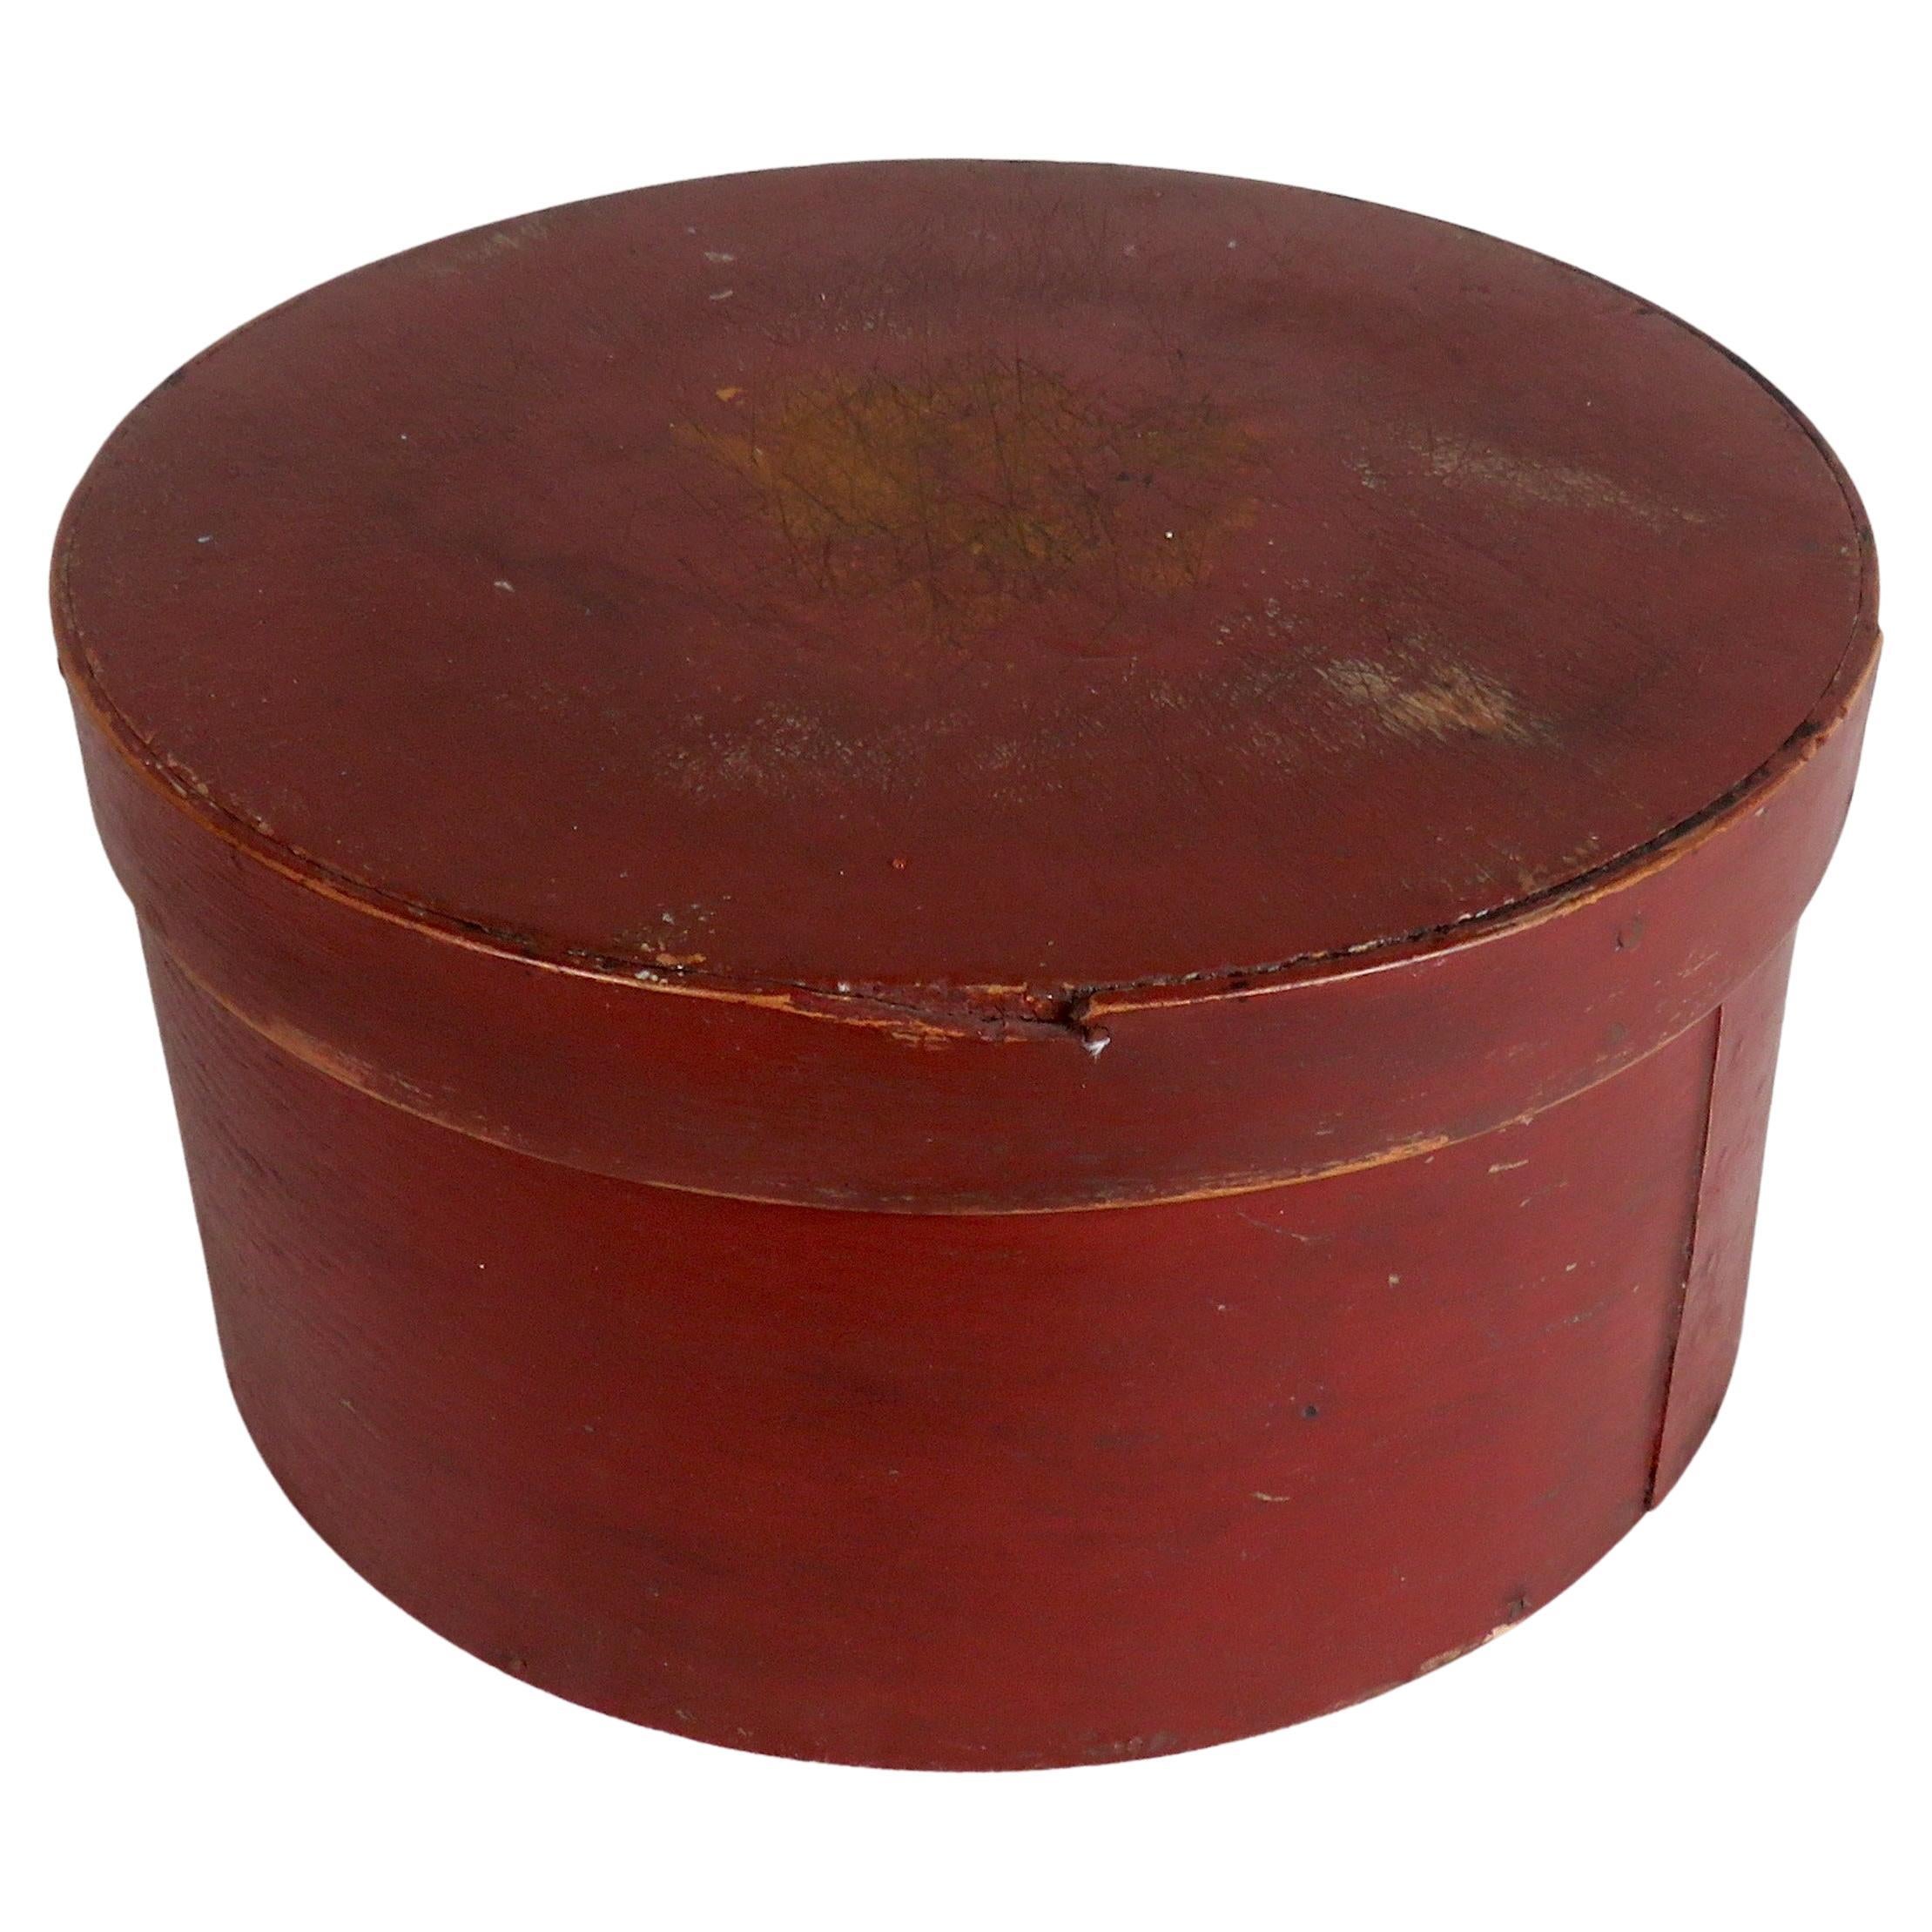 Boîte en bois cintré du 19ème siècle peinte en rouge